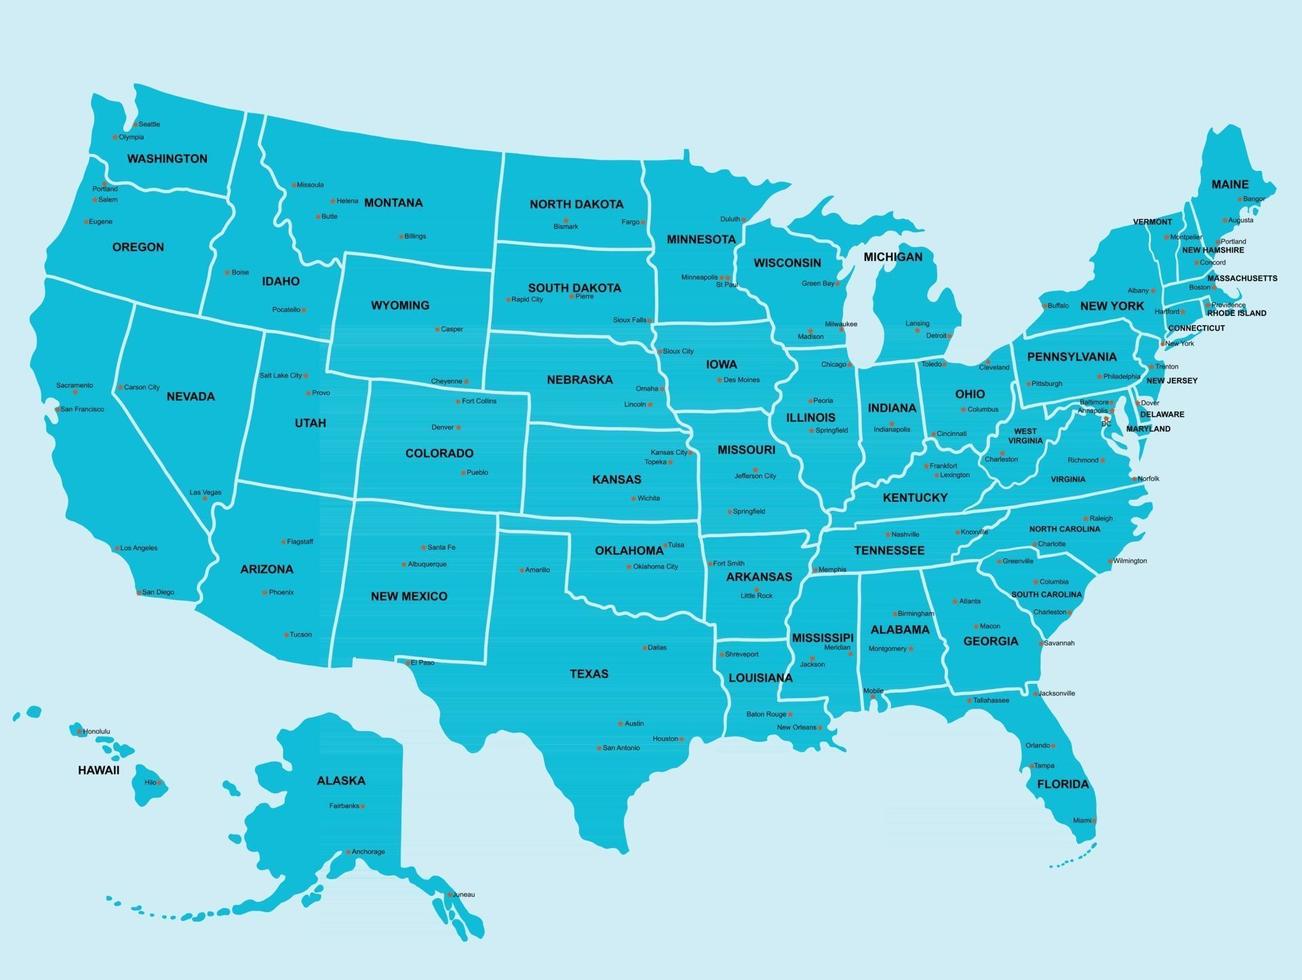 doodle dessin à main levée carte politique des états-unis avec les grandes villes. illustration vectorielle. vecteur